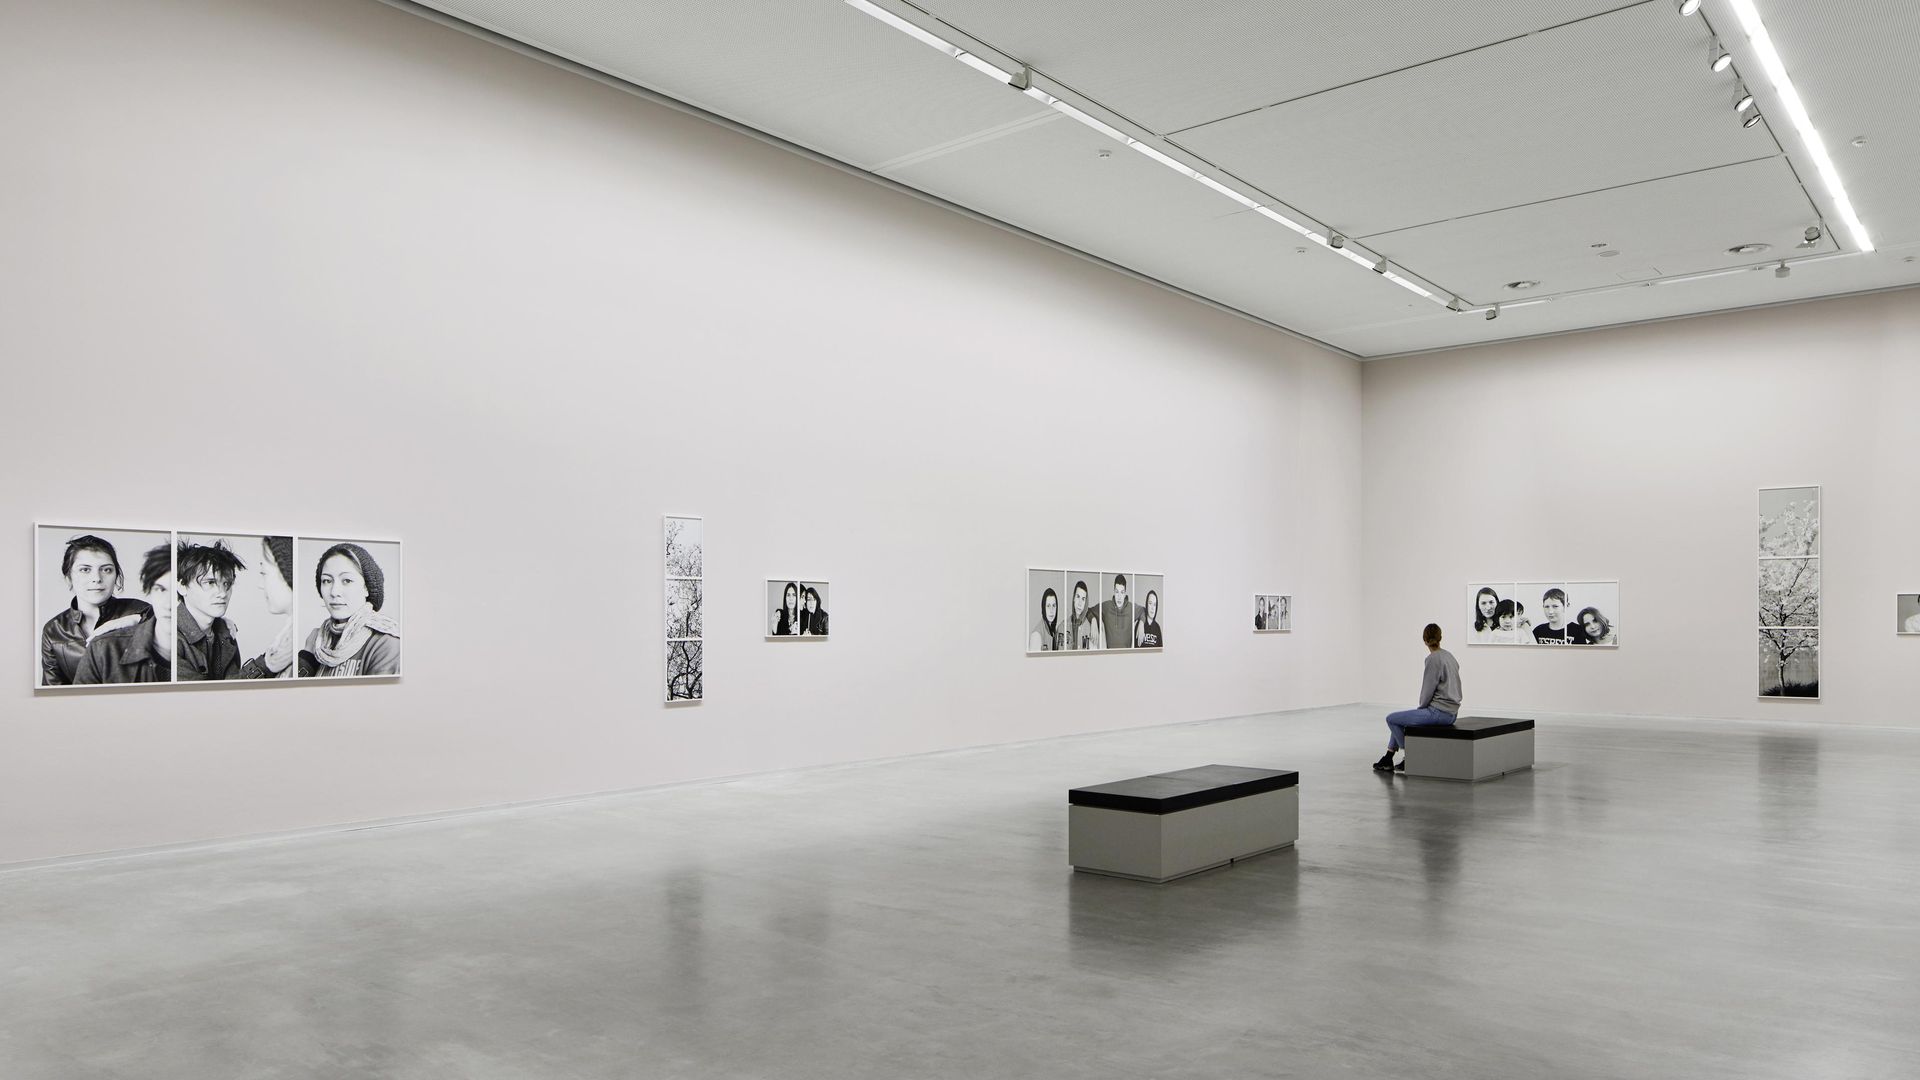 Foto: Hoher rechteckiger Ausstellungsraum mit Kunstwerken an den Wänden. Auf einer Bank sitzt eine Person.